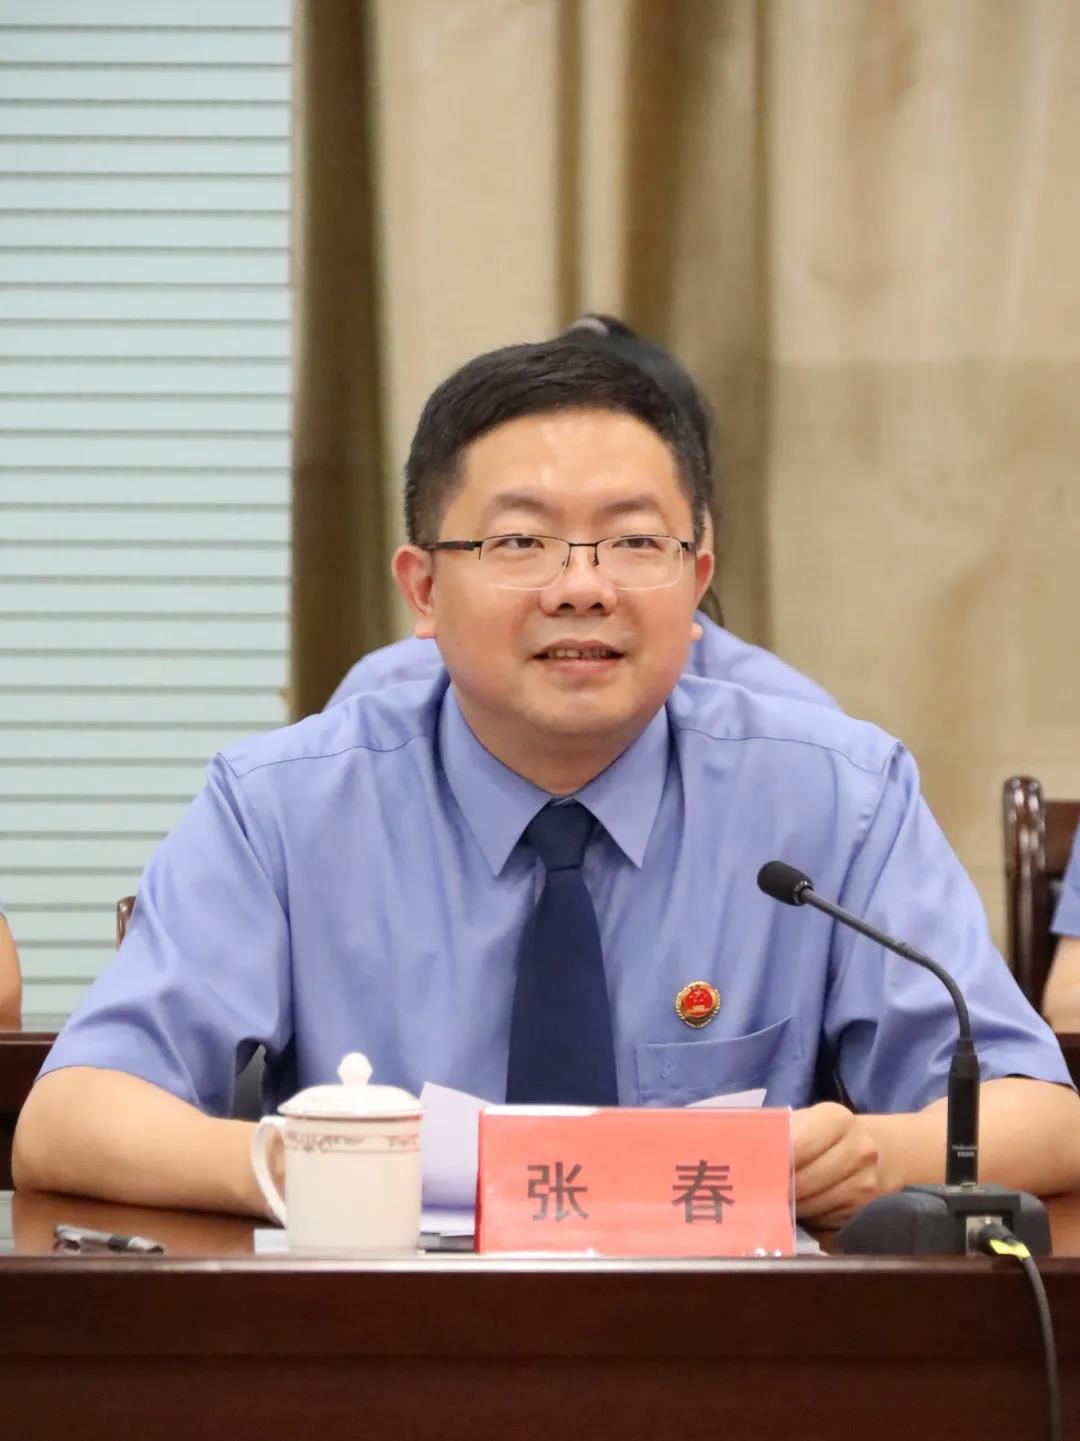 第一项议程由闽侯县人民检察院党组书记,检察长张春同志致辞,他表示